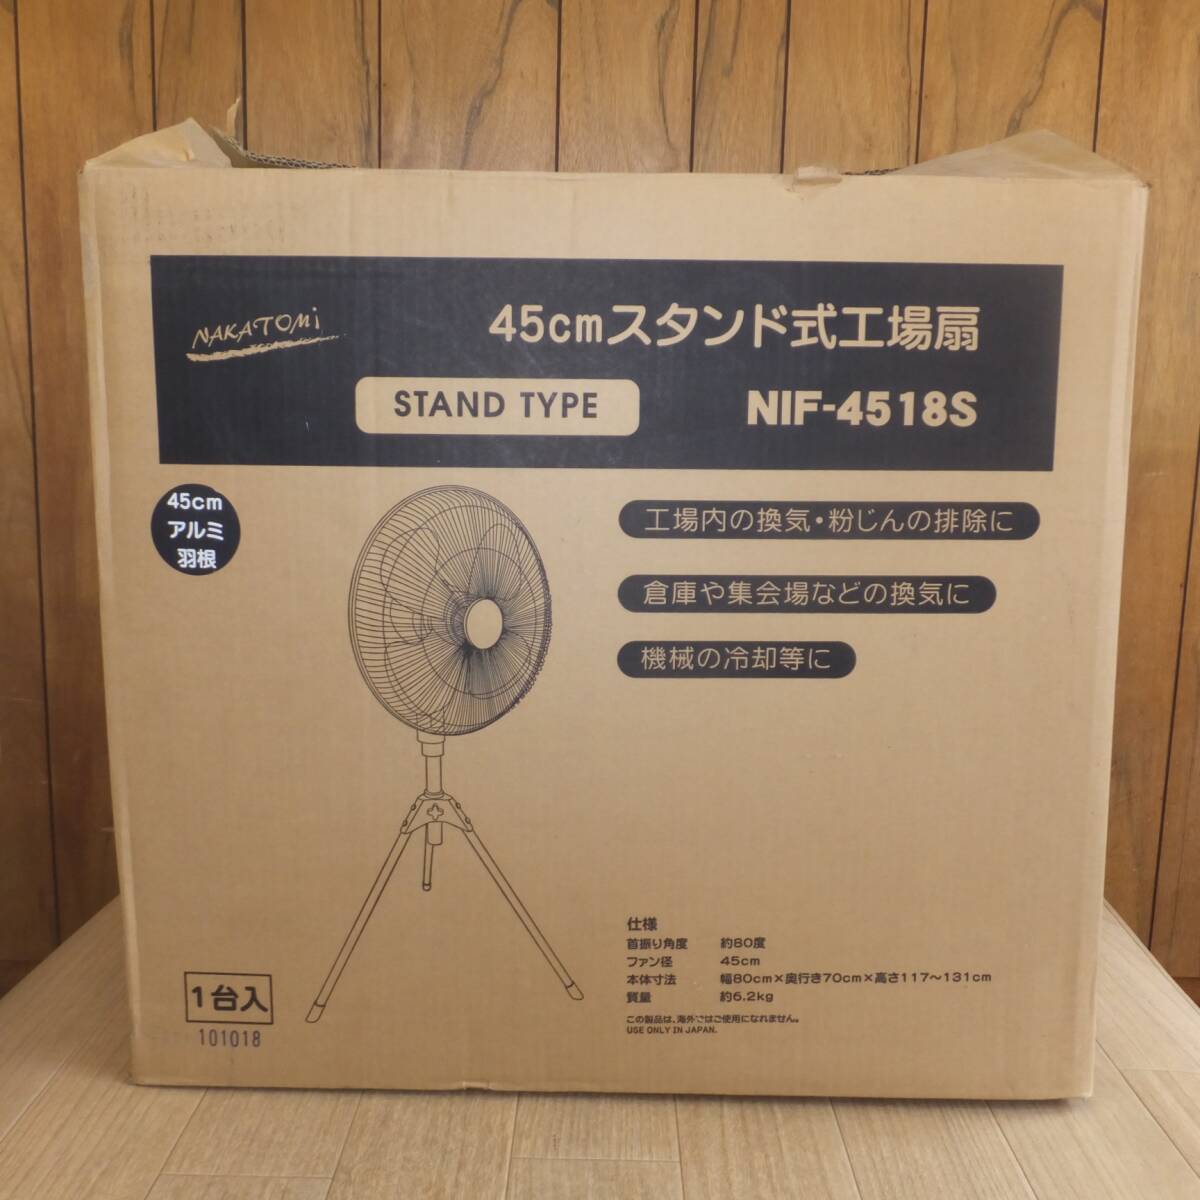 [ бесплатная доставка ] не использовался *nakatomiNAKATOMI 2018 год производства 45cm подставка тип промышленный вентилятор NIF-4518S STAND TYPE AC100V 50/60Hz*